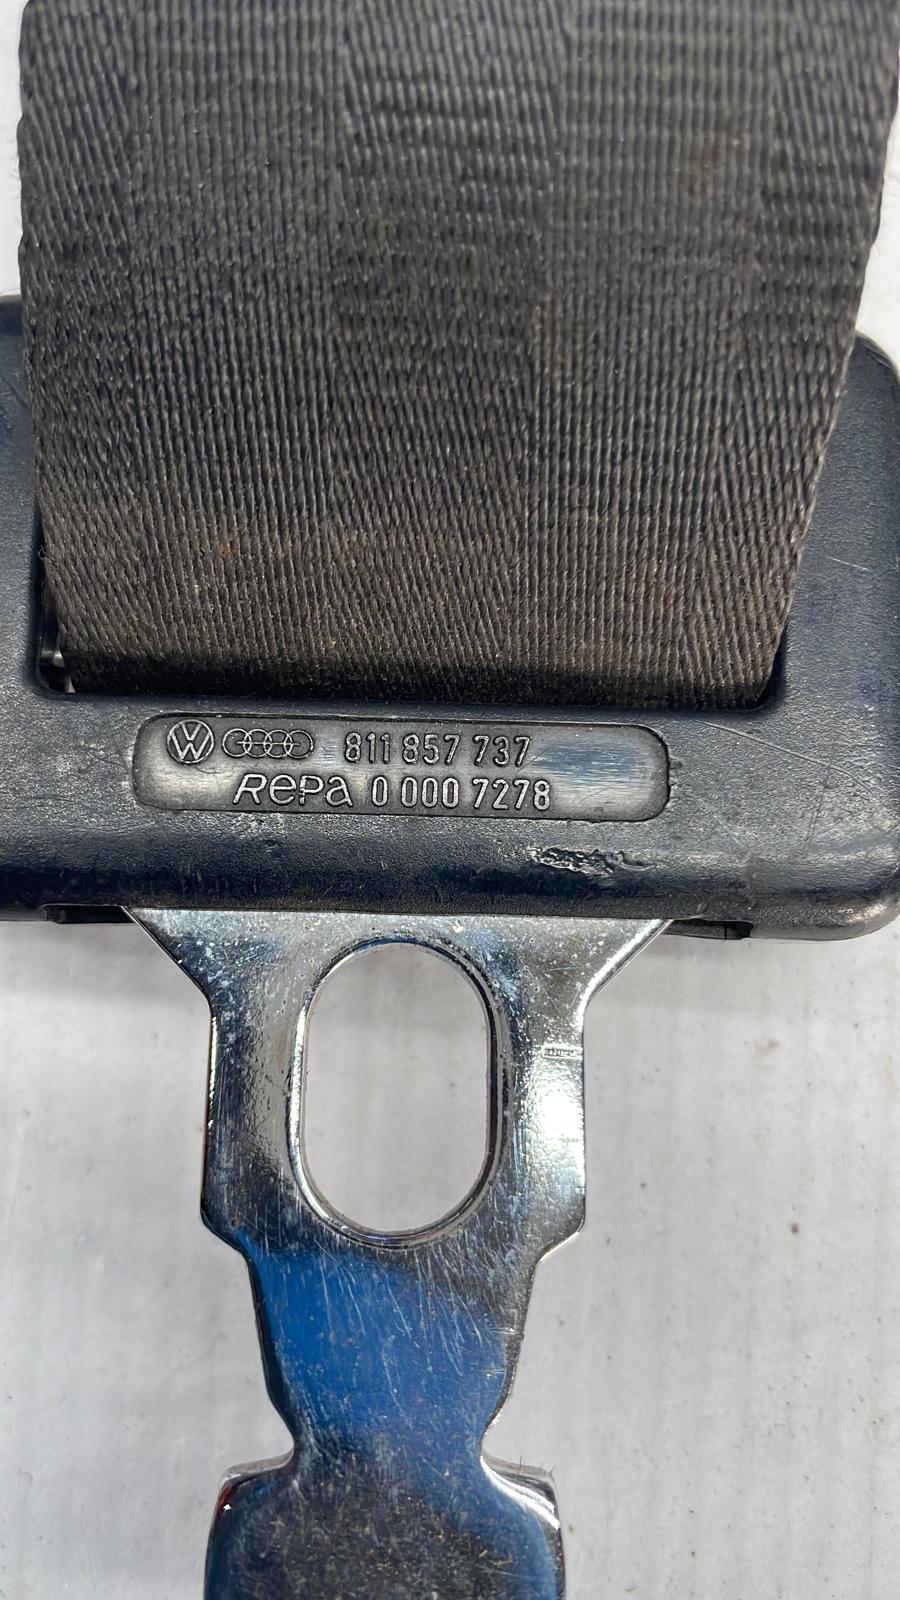 Used Porsche 924/944 rear 2 point static seat belt, single 811 857 737